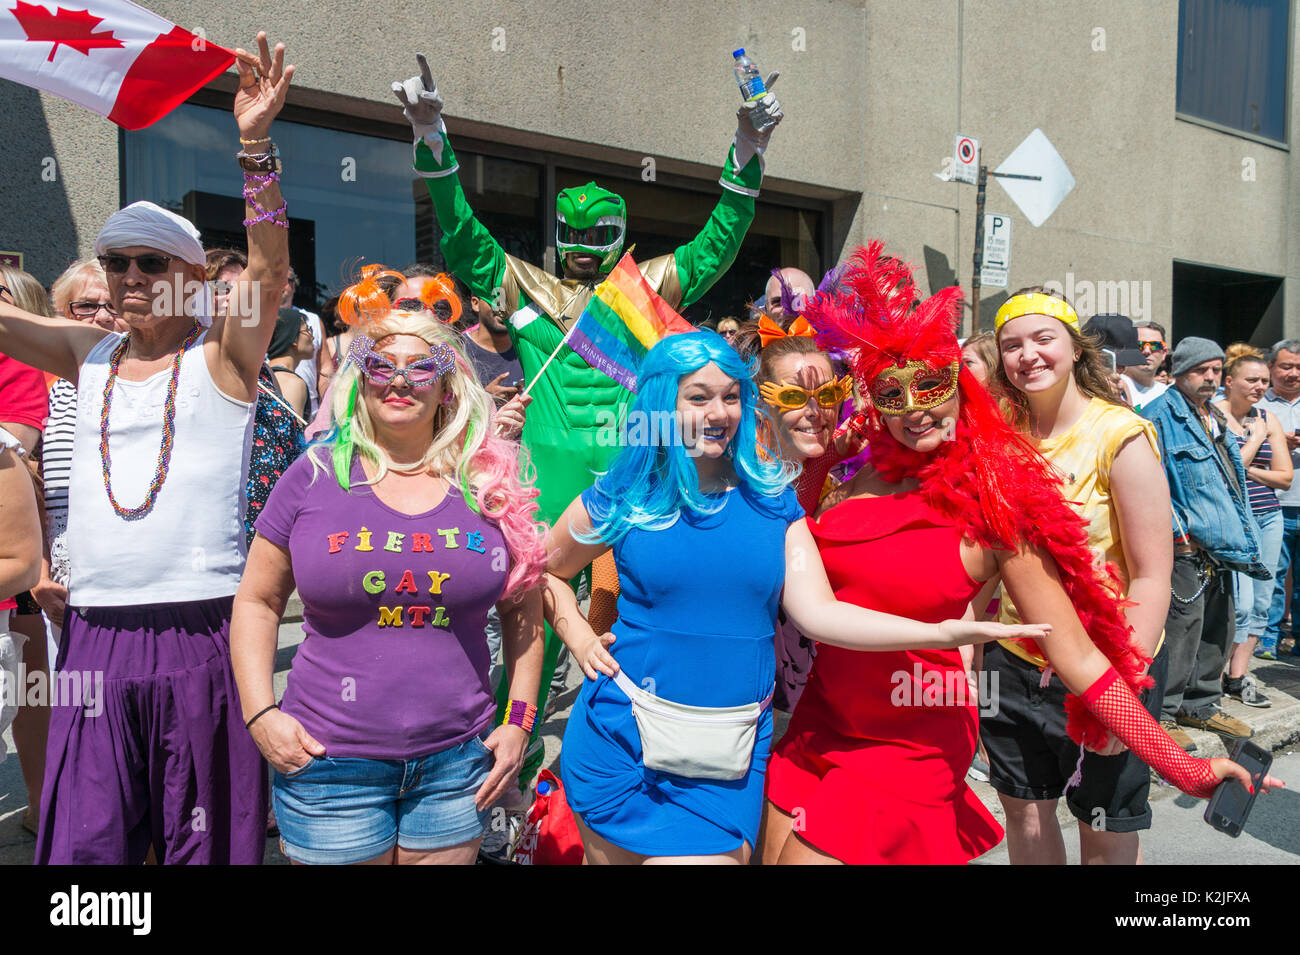 Montréal, CA - 20 août 2017 : Heureux et souriant de spectateurs assistant à la parade de la Fierté gaie de Montréal. Banque D'Images